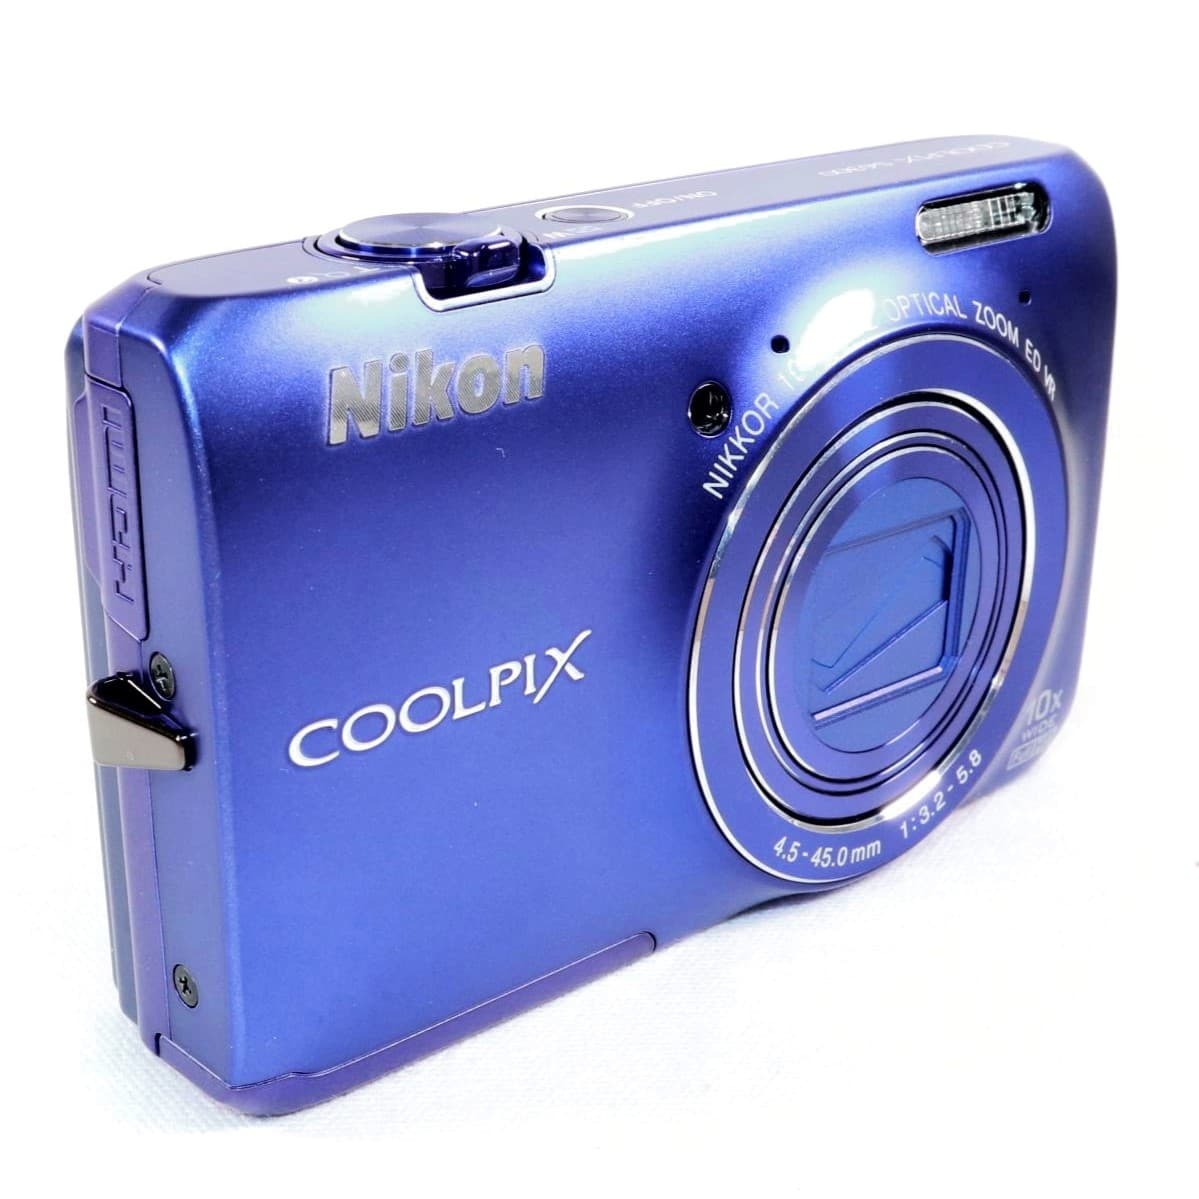 《新品級》デジカメ ニコン NIKON COOLPIX S6300 スタイリッシュブルー コンパクトデジタルカメラ コンデジ クールピクス k2575の画像3